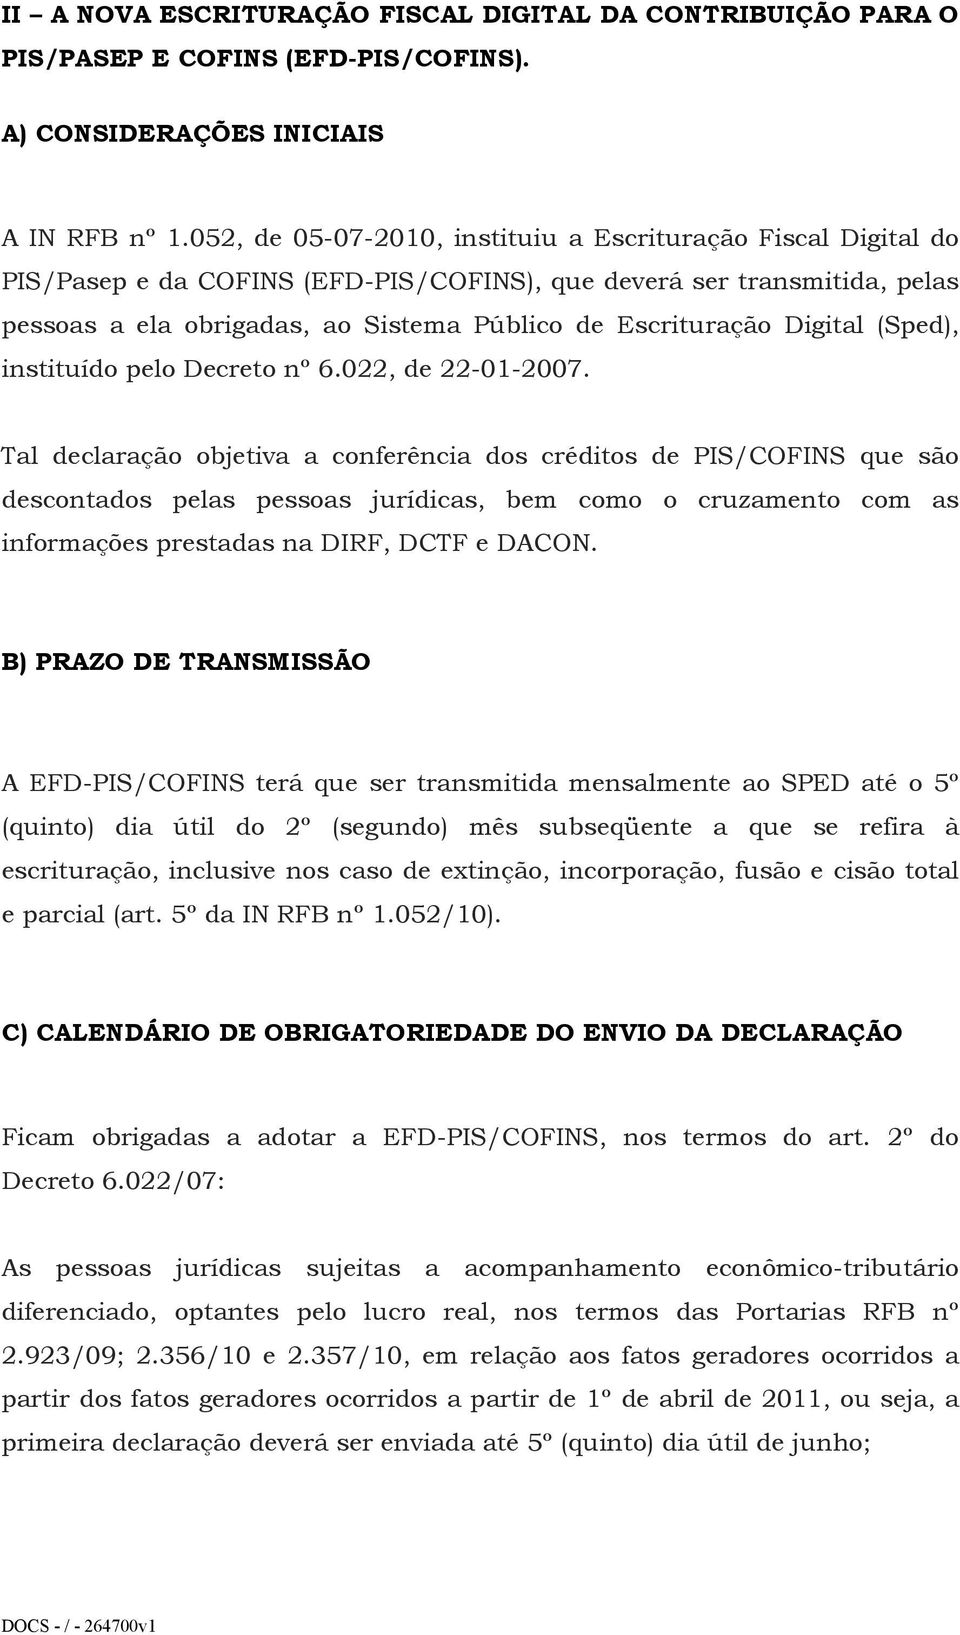 Digital (Sped), instituído pelo Decreto nº 6.022, de 22-01-2007.